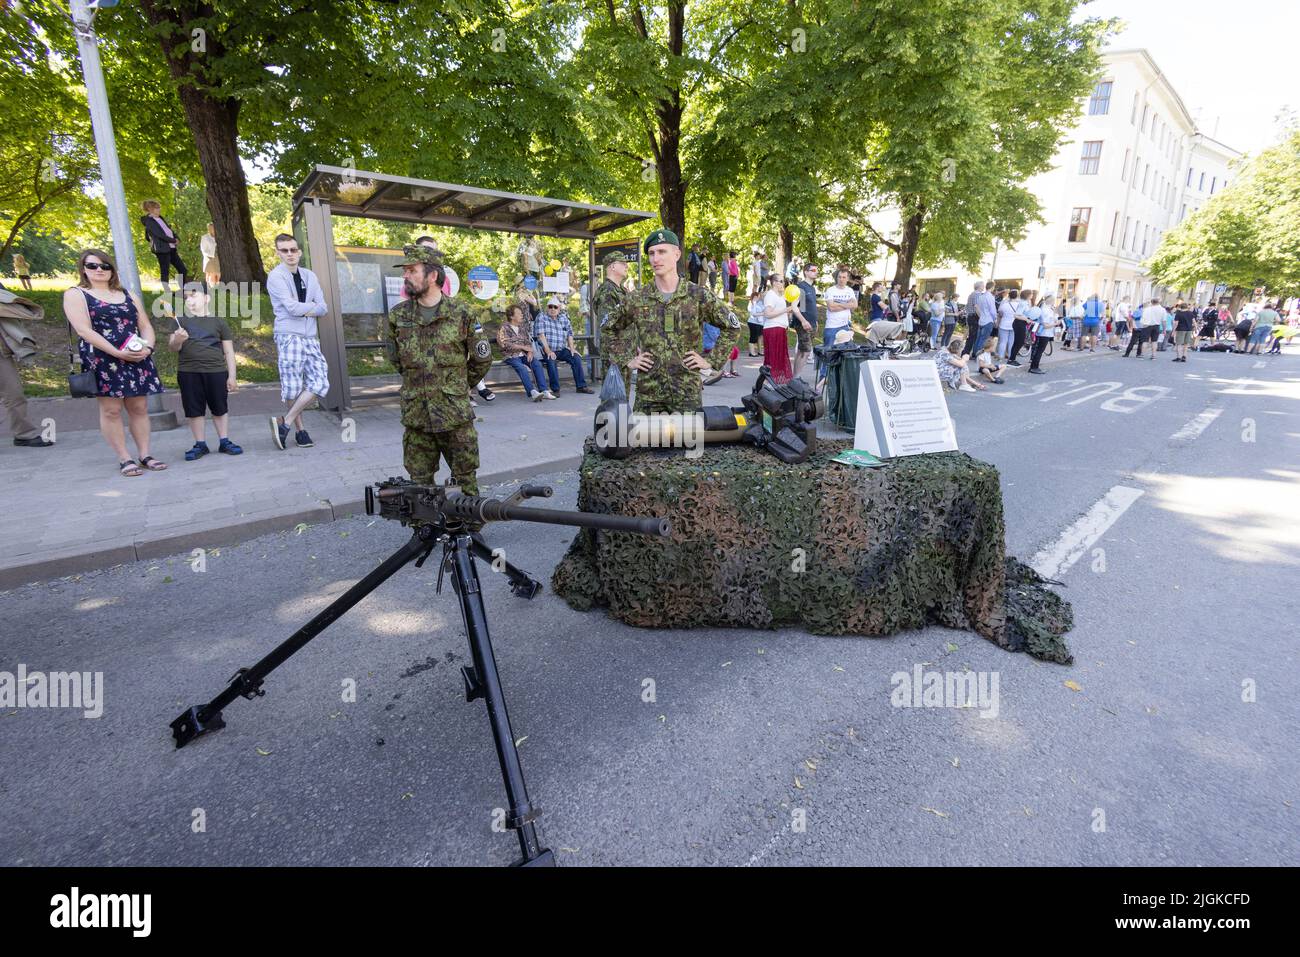 Soldados del ejército paramilitar de la Liga de Defensa de Estonia exhiben armas el 23rd de junio, Día de la Victoria, en Tartu, Estonia, Europa Foto de stock